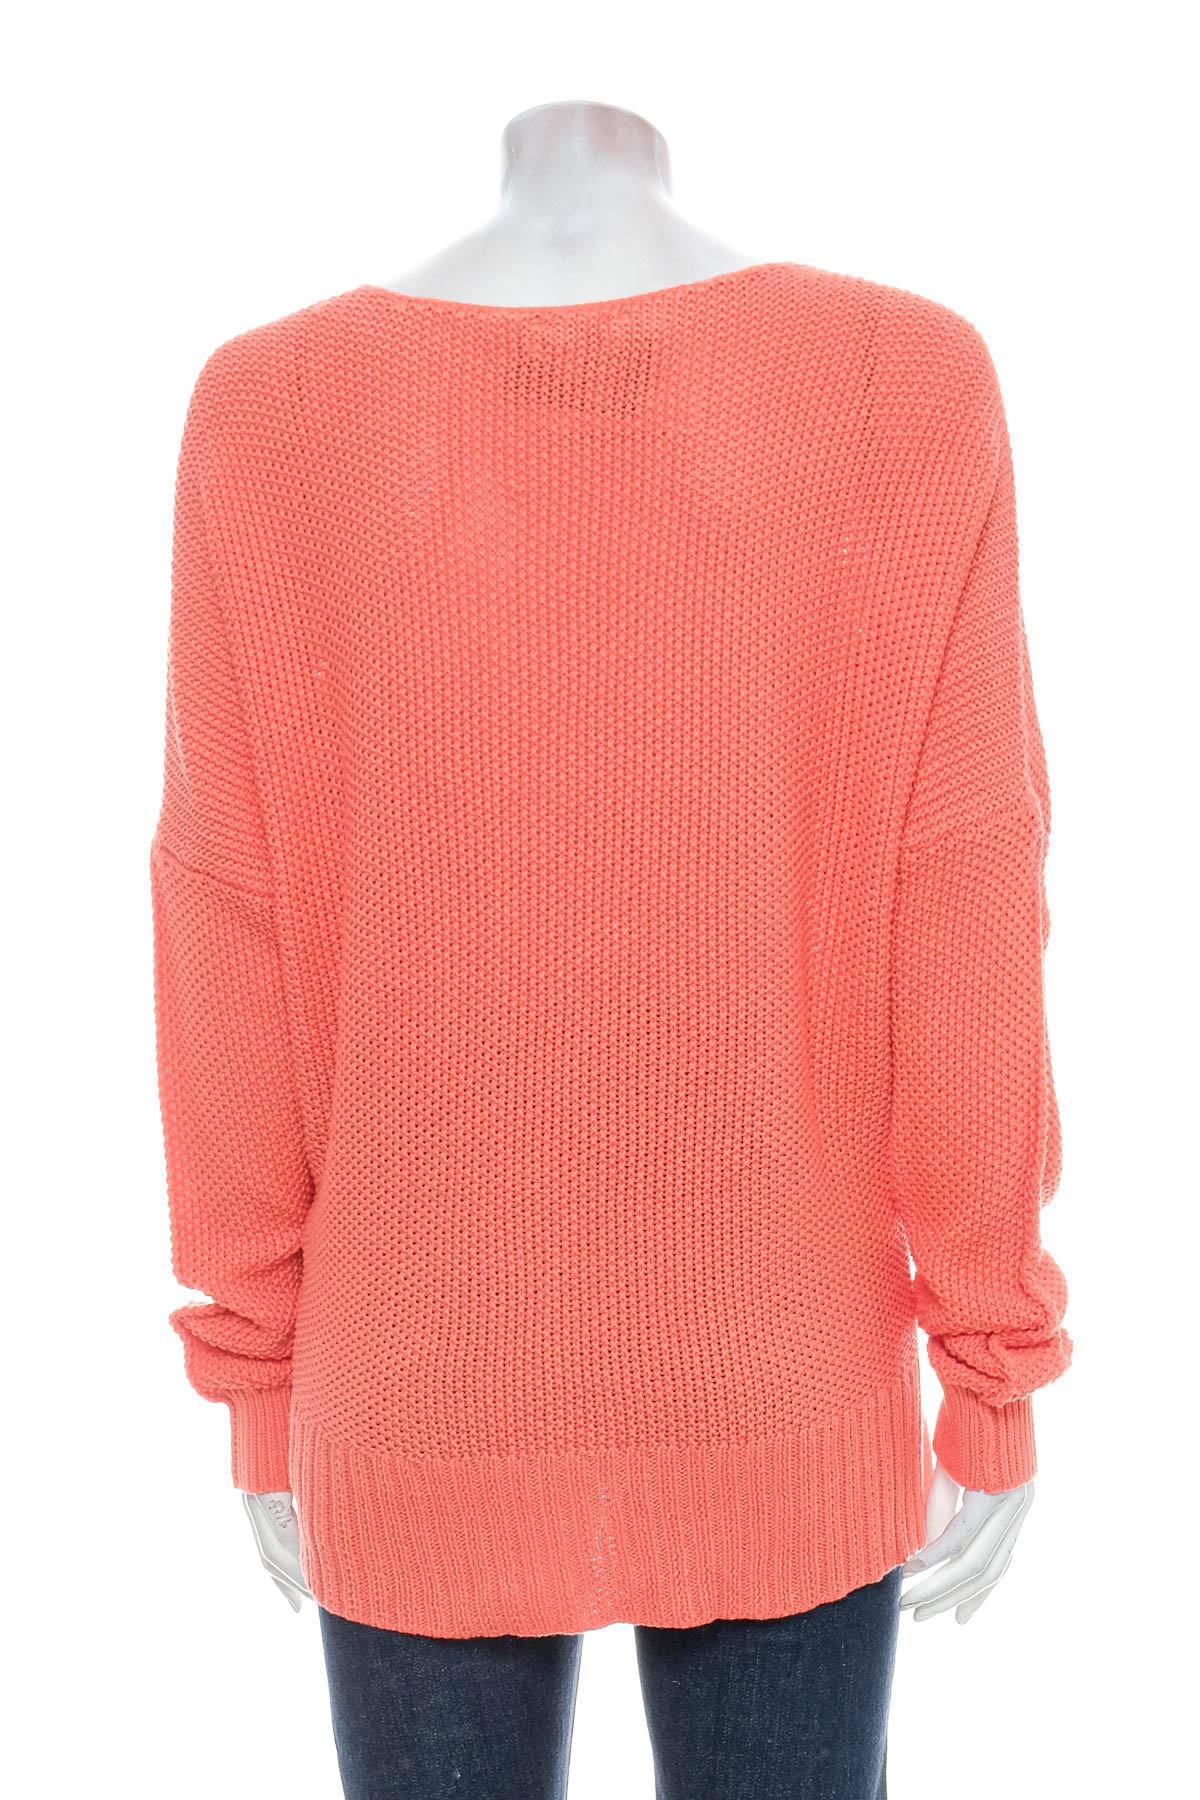 Women's sweater - LUCKY BRAND - 1